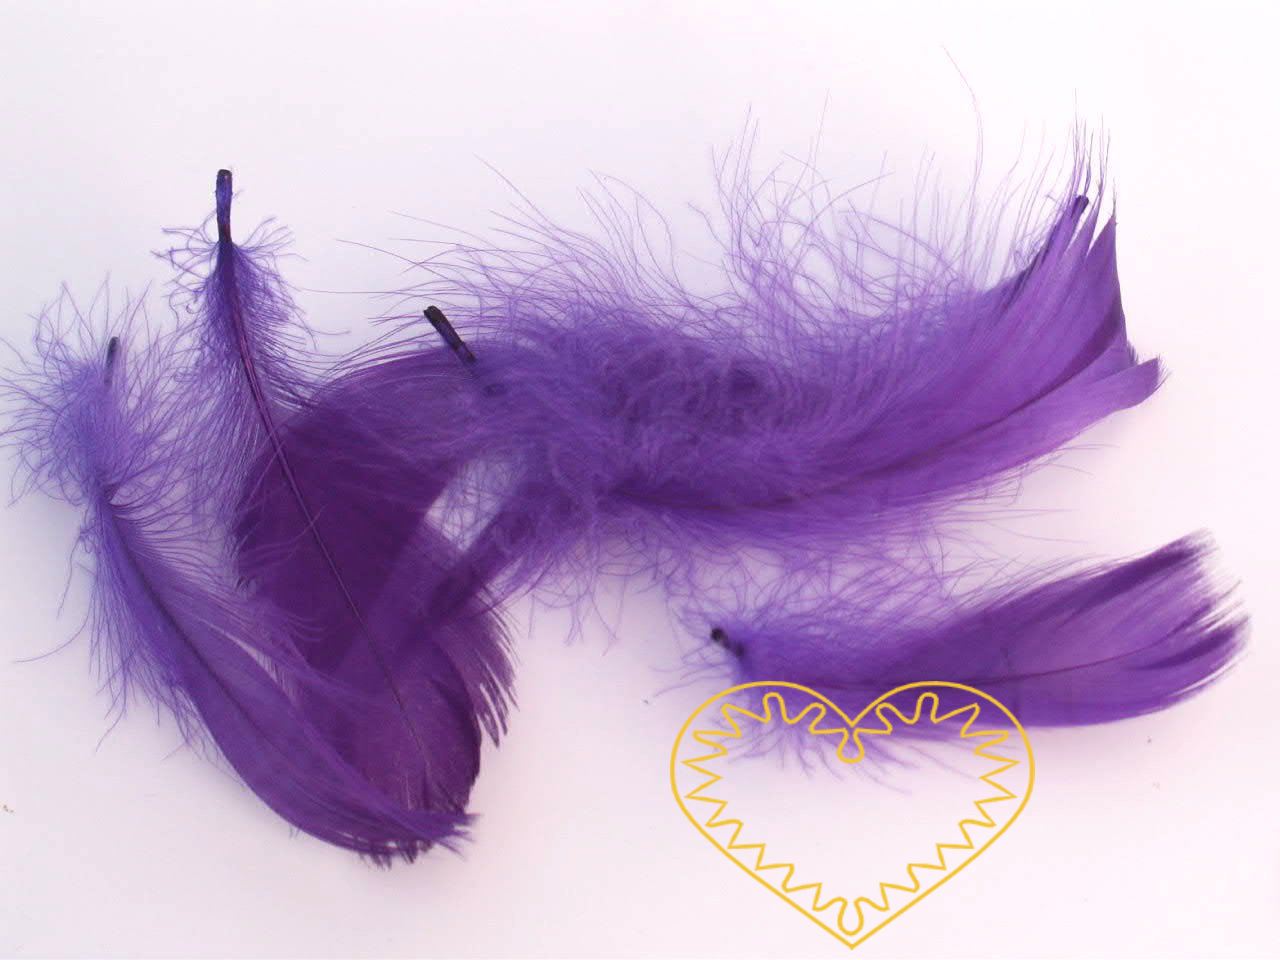 Peříčka fialová - balení 15 g (cca 250 kusů). Peříčka mají široké uplatnění jak při aranžování a výrobě dekorací, tak také např. při tvoření figurek ptáčků, andělíčků apod.